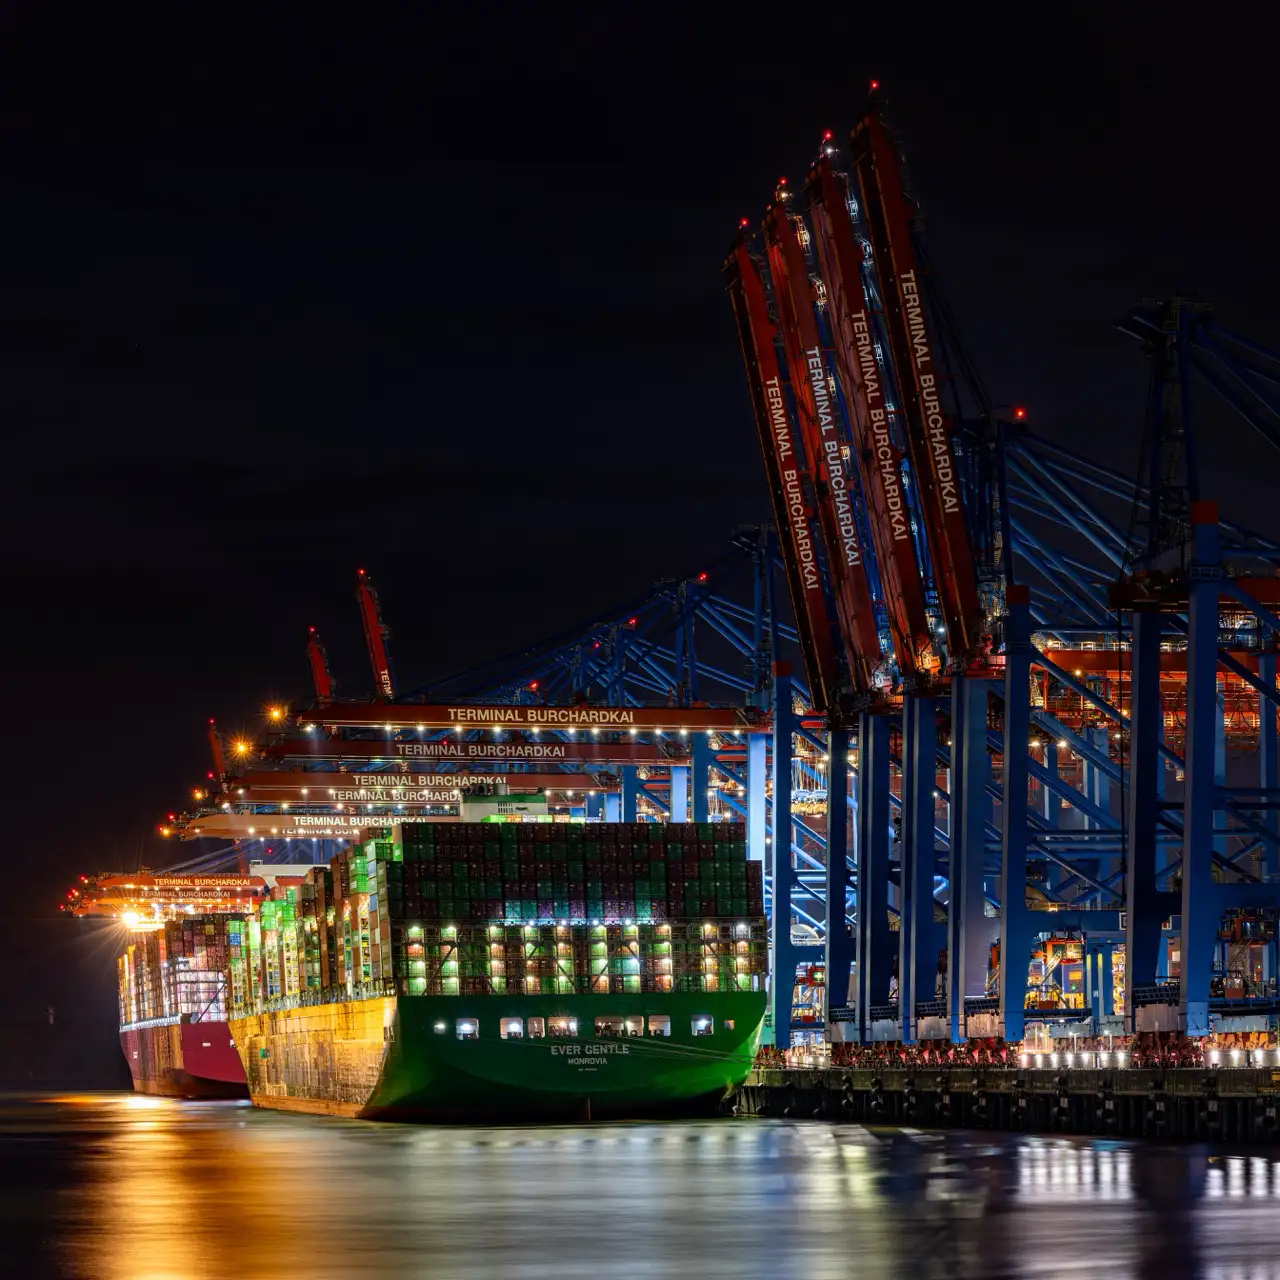 Nachtansicht eines Containerschiffs, das am Terminal Burchardkai angedockt ist, mit Kränen und Lichtern, die das Gebiet beleuchten.